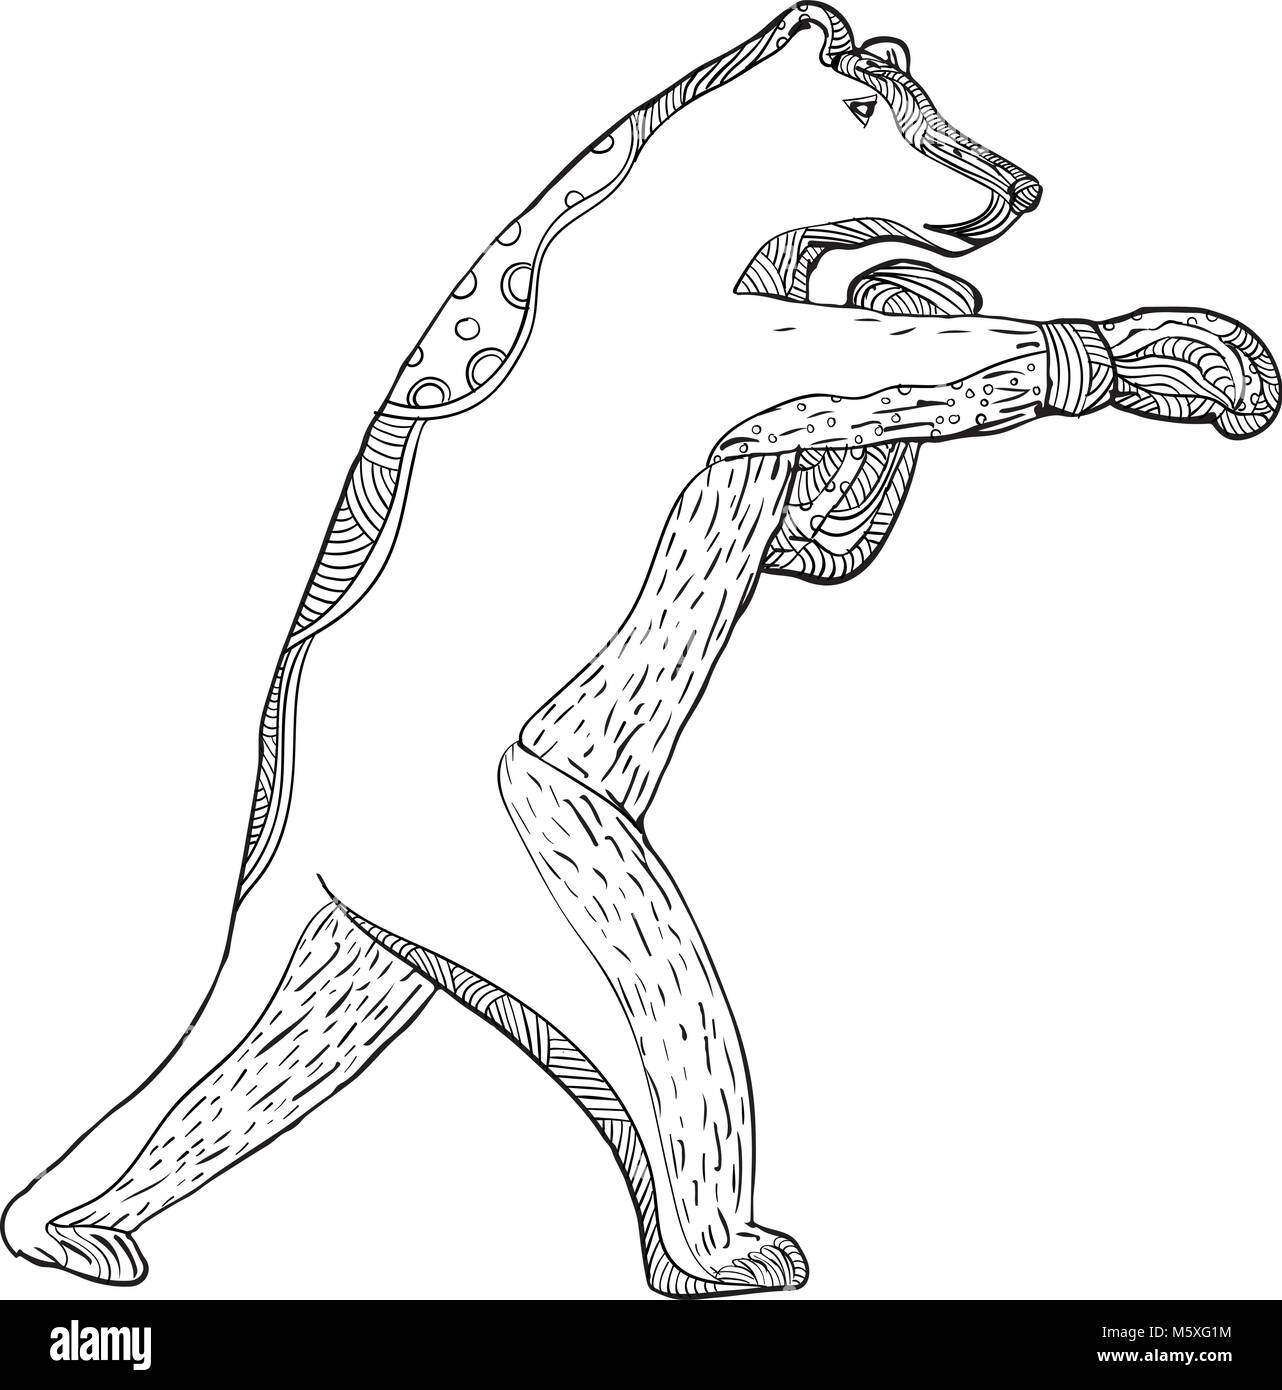 Doodle arte illustrazione di un orso grizzly o orso bruno boxer boxing visto dal lato in bianco e nero eseguita in stile mandala. Illustrazione Vettoriale